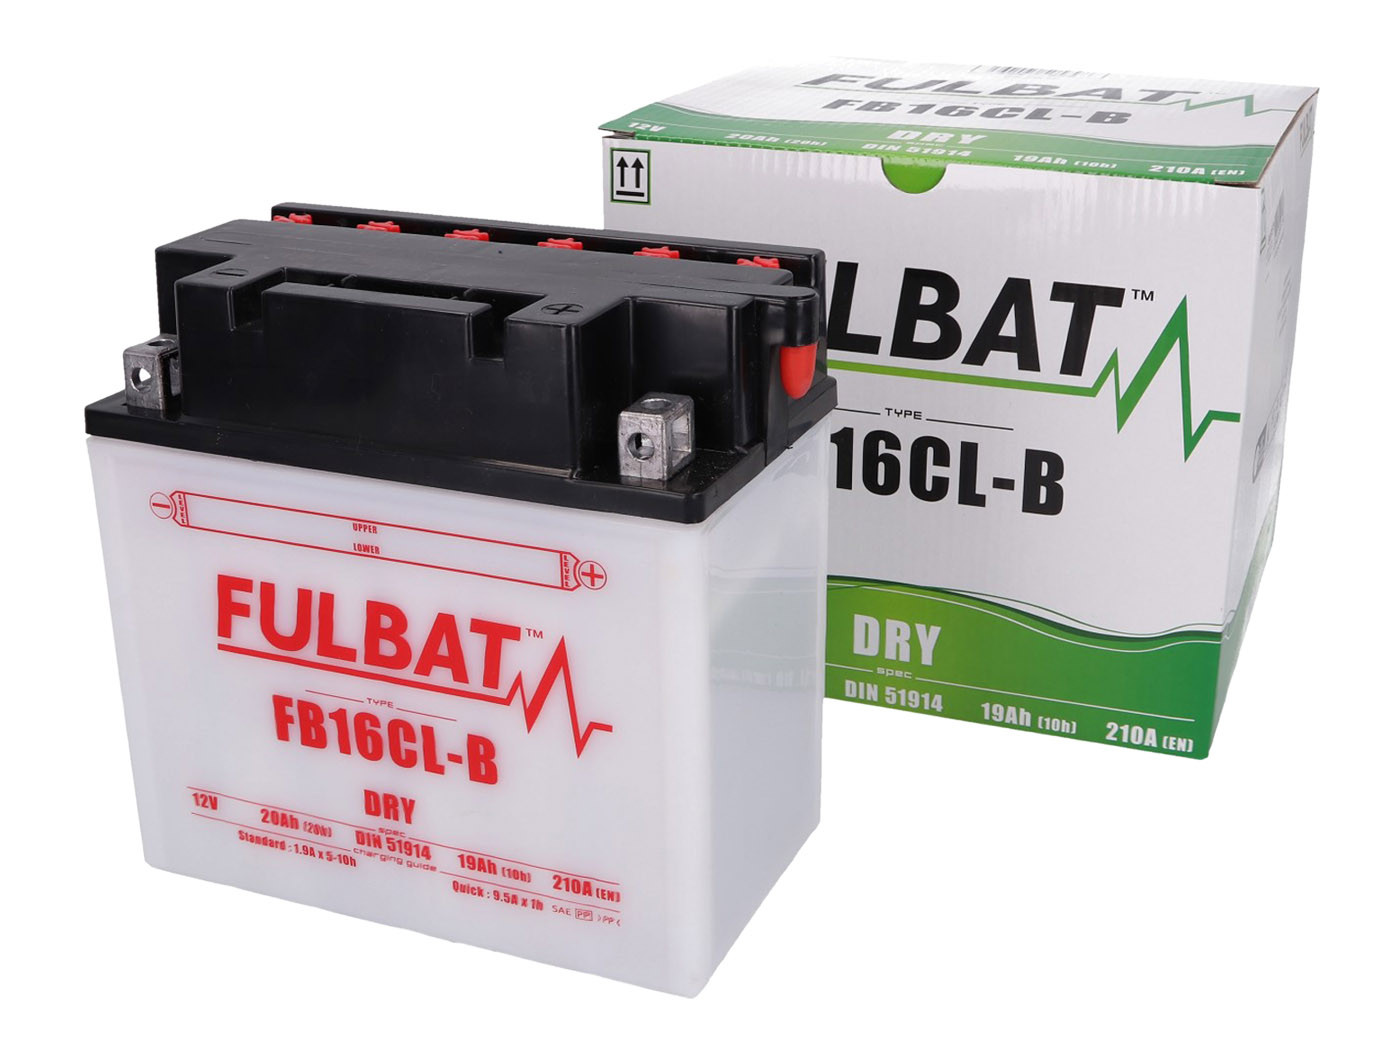 Fulbat FB16CL-B DRY száraz akkumulátor + savcsomag